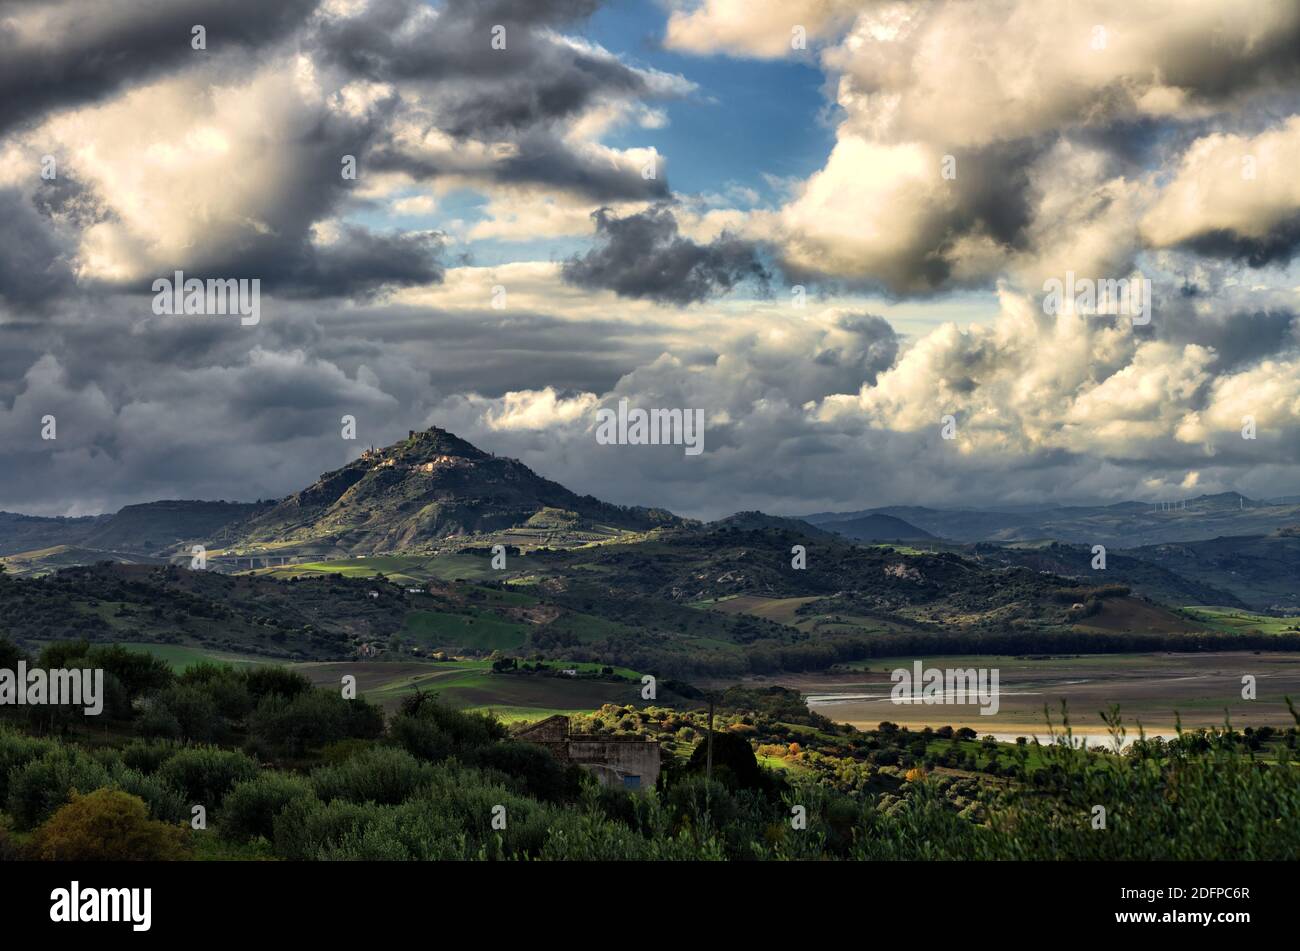 Espectacular paisaje de la campiña de Sicilia, el monte de la ciudad de Agira se destaca entre el tiempo tormentoso en terreno montañoso de sicilia interior Foto de stock